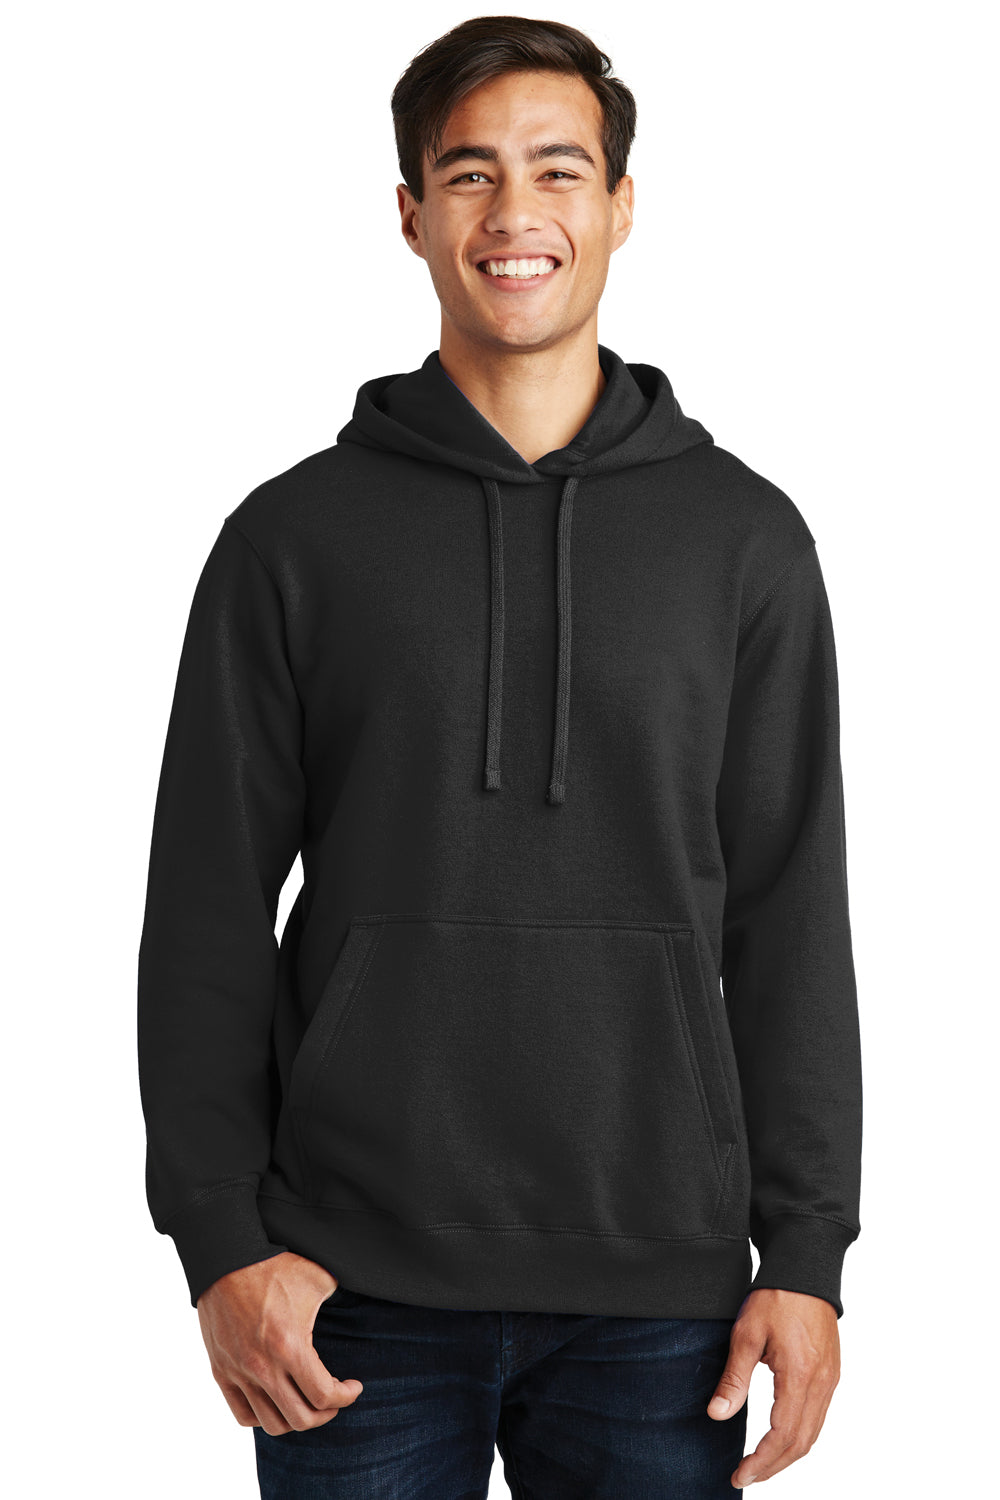 Port & Company PC850H Mens Fan Favorite Fleece Hooded Sweatshirt Hoodie Black Front